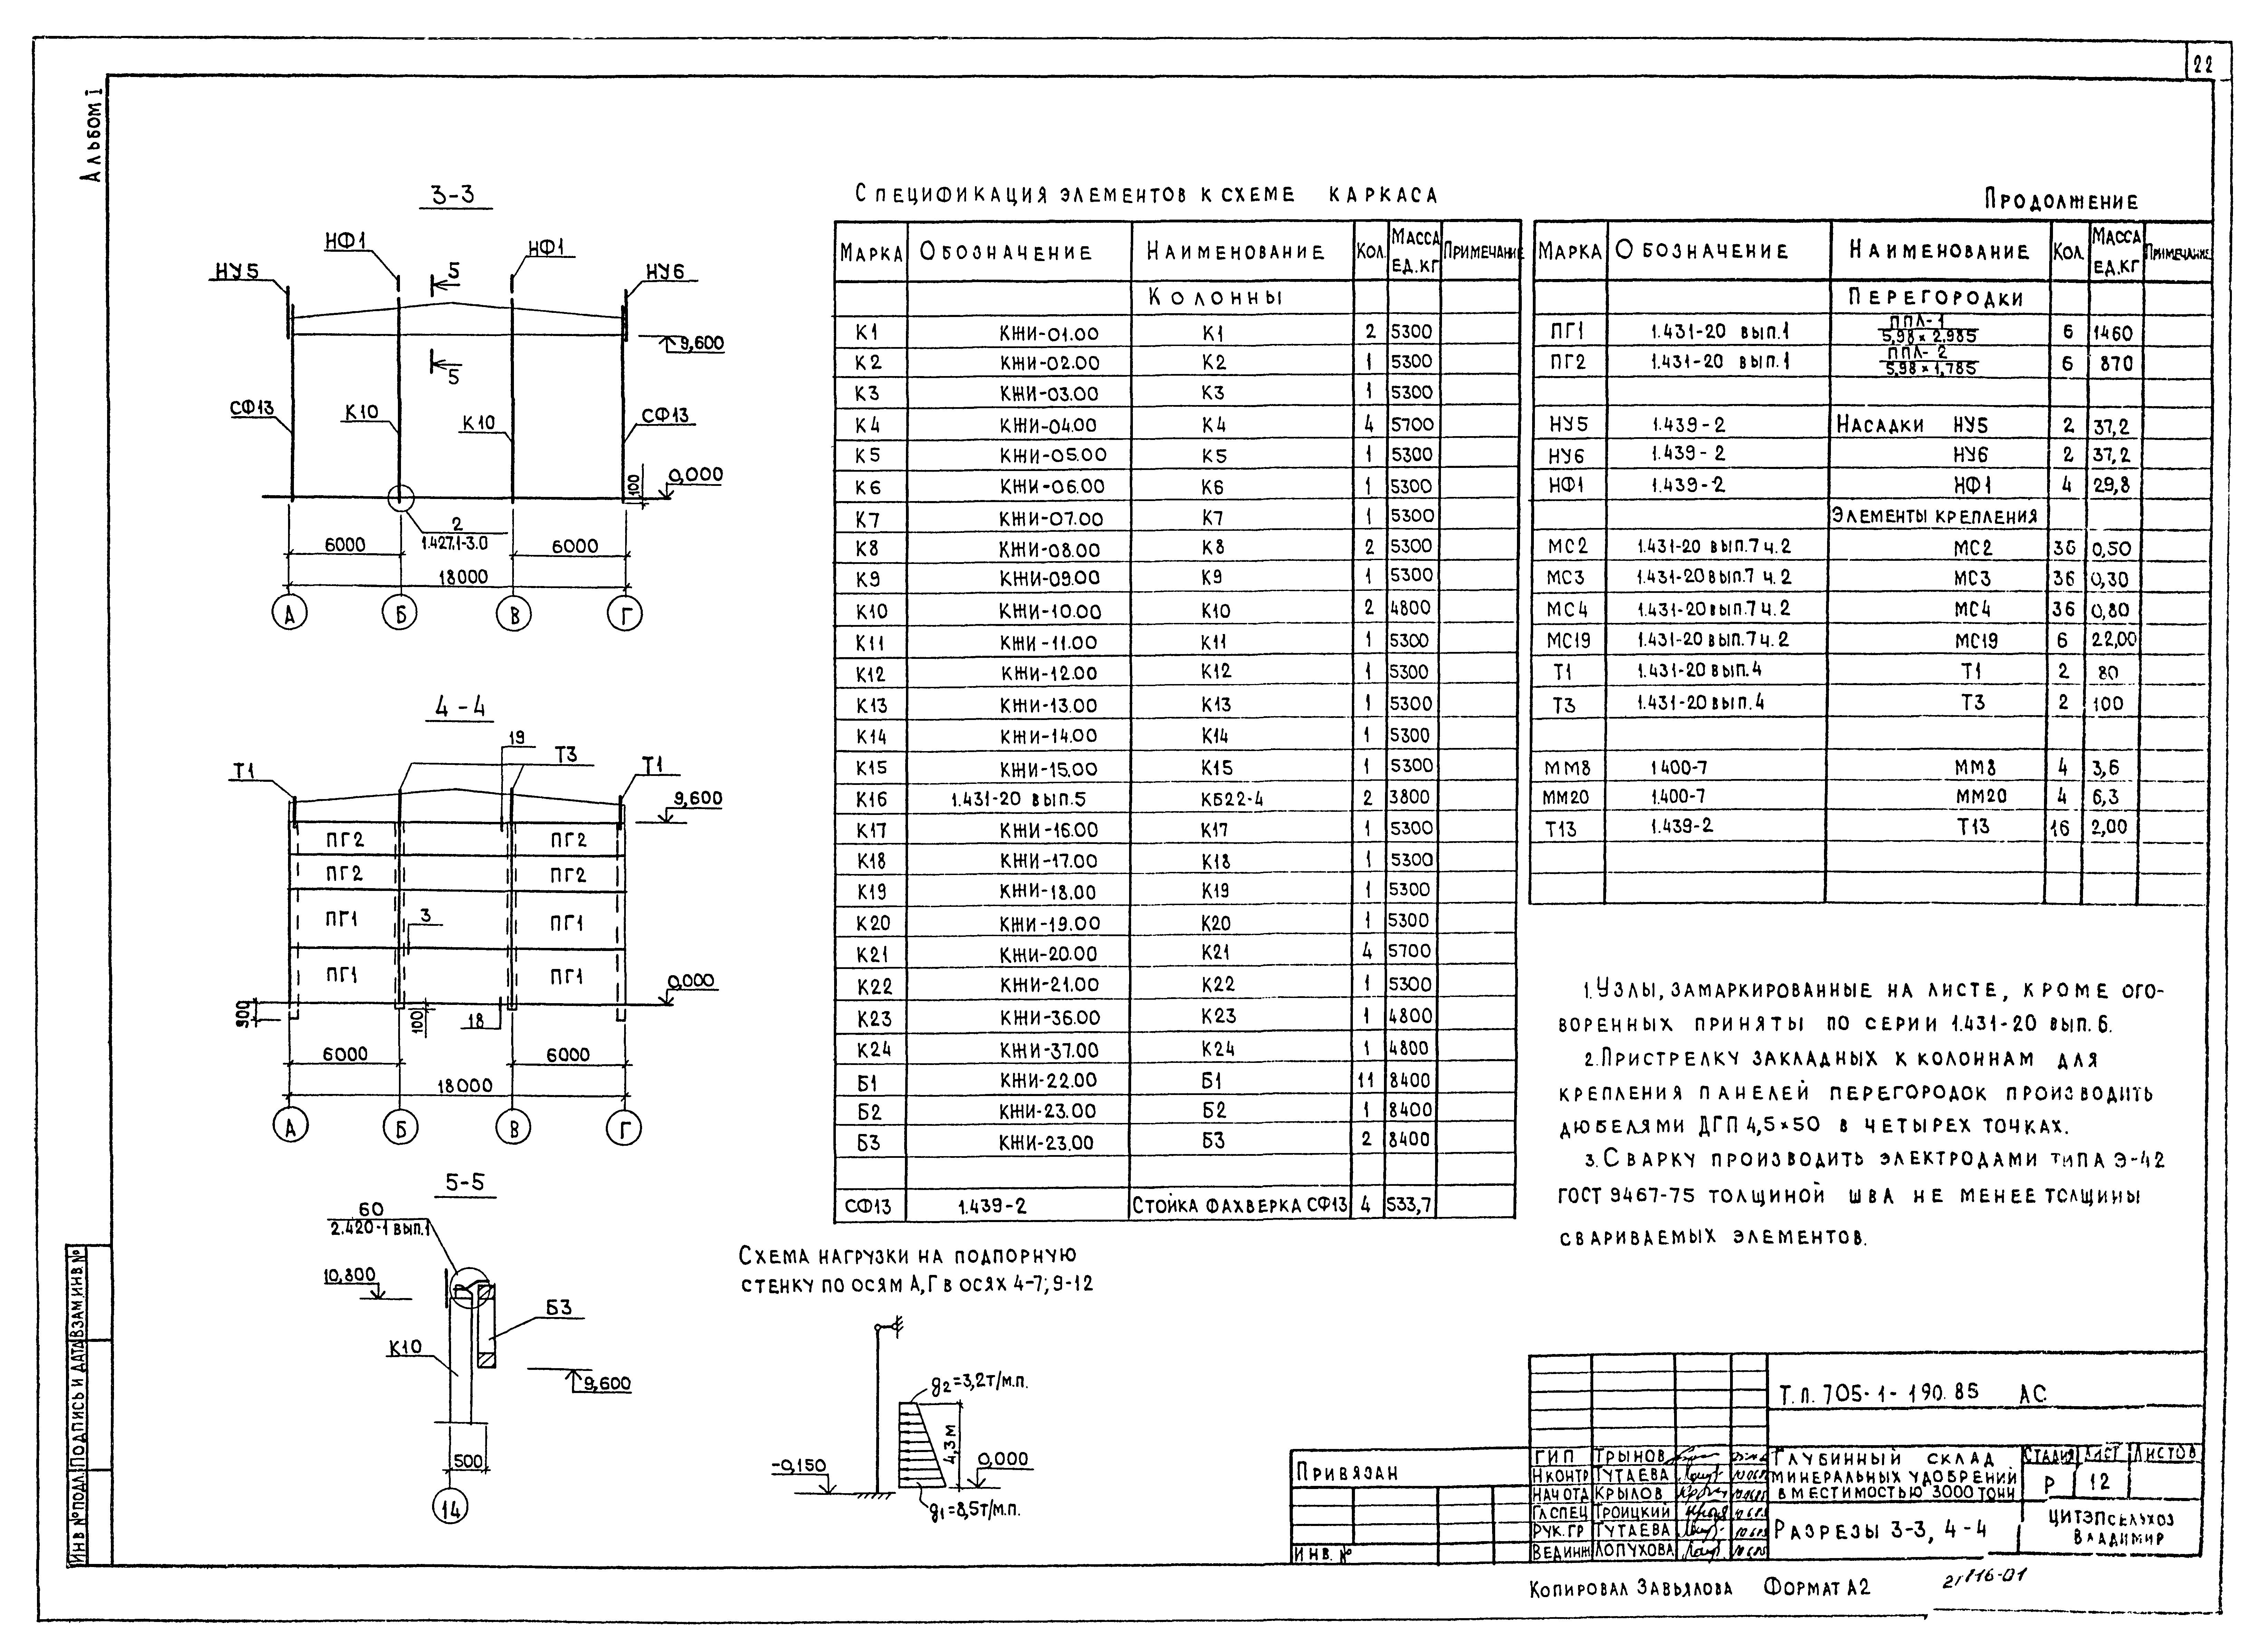 Типовой проект 705-1-190.85